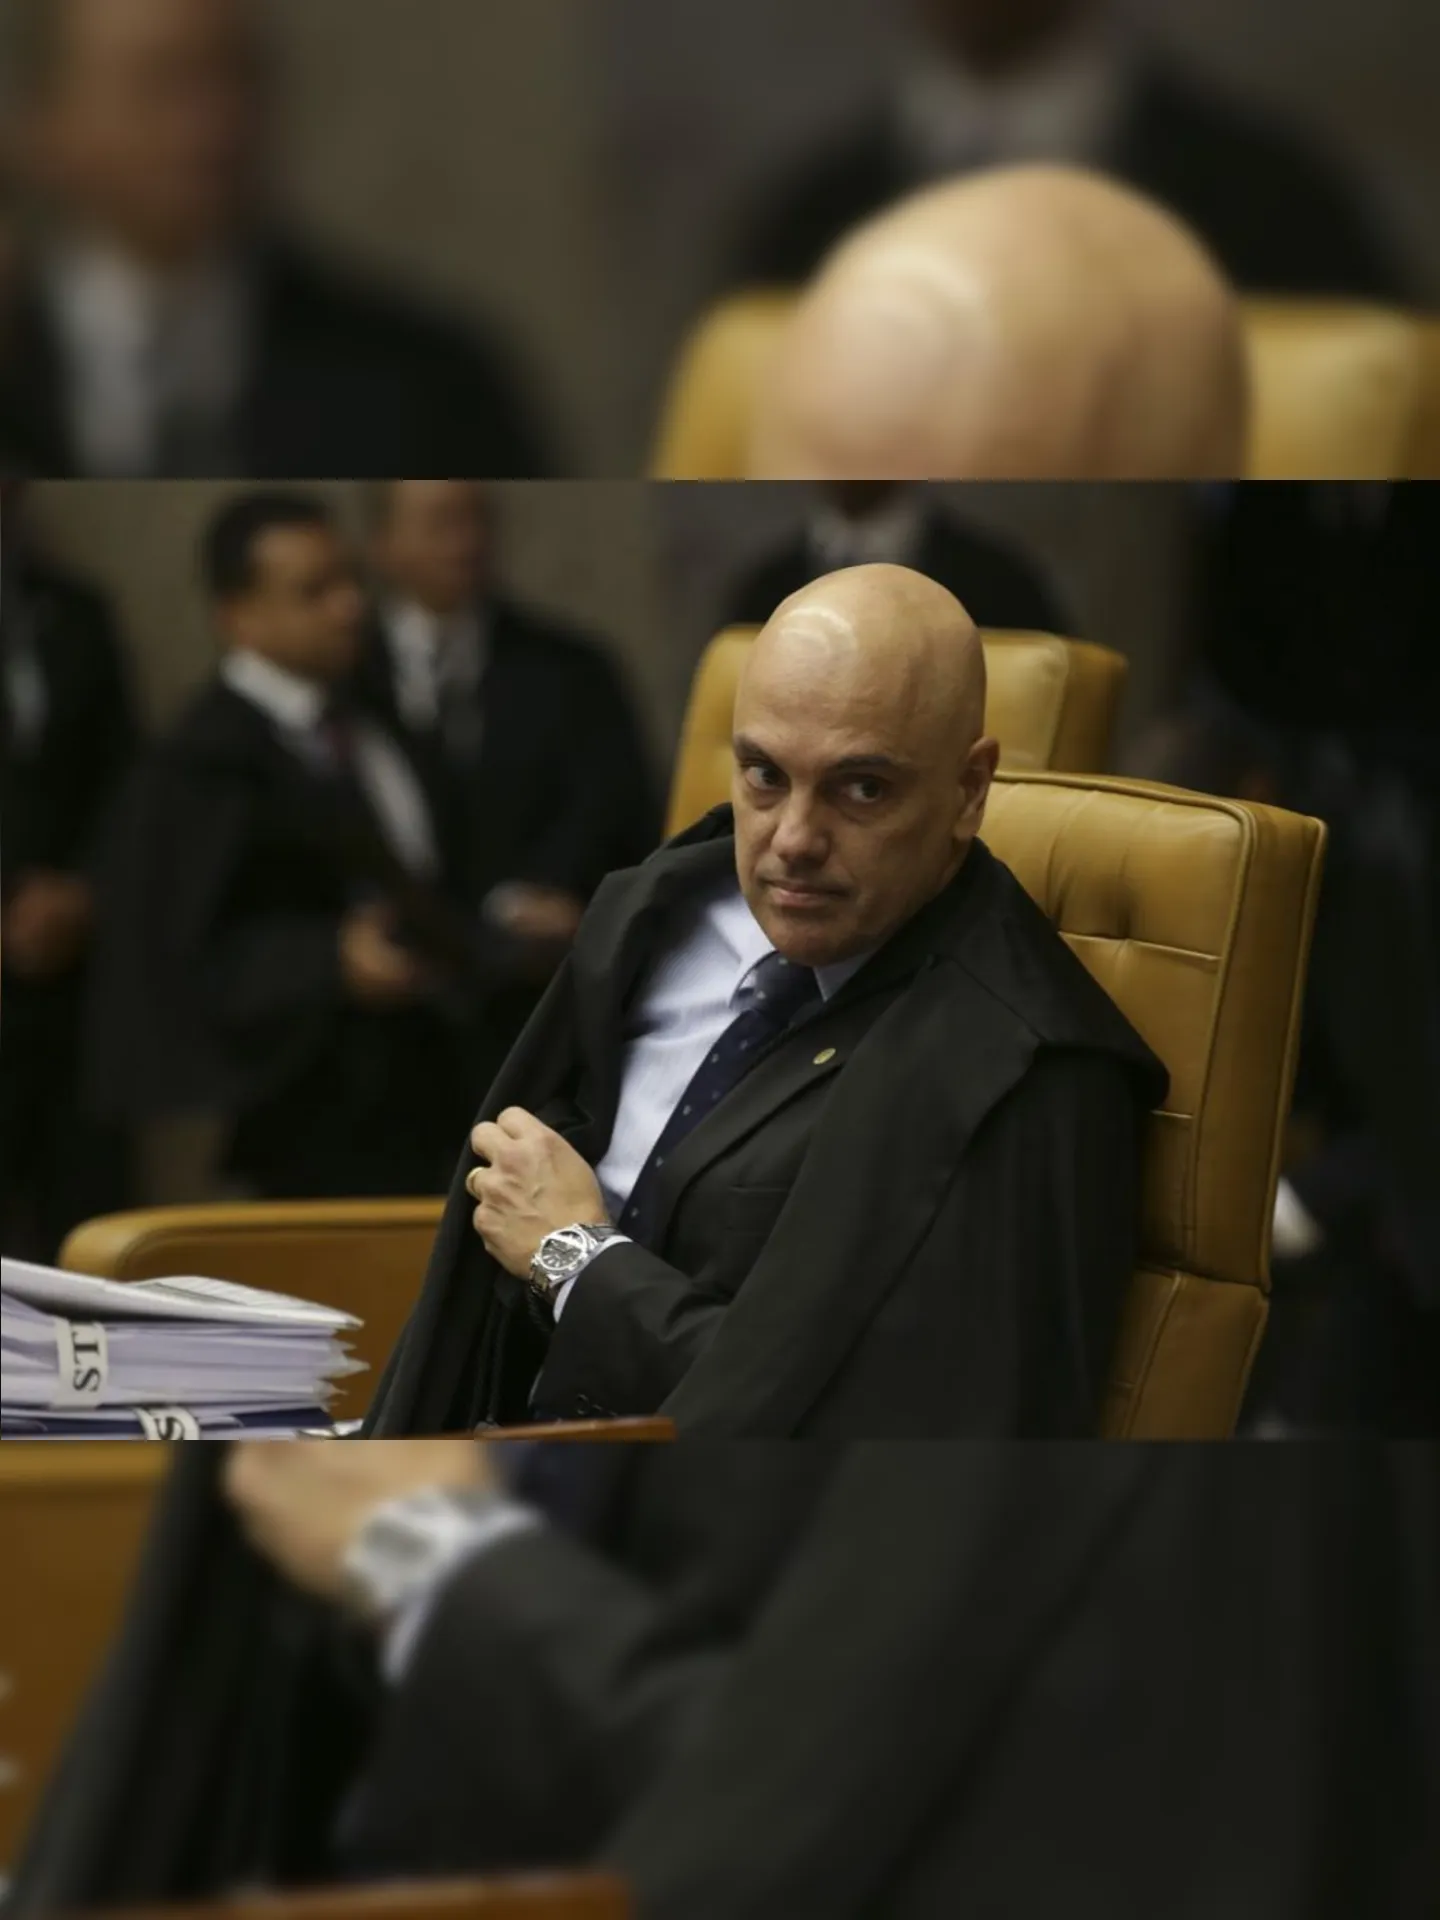 O ministro Alexandre de Moraes durante o julgamento em que decidem pela legalidade ou não da prática de sacrifícios animais em cultos religiosos.